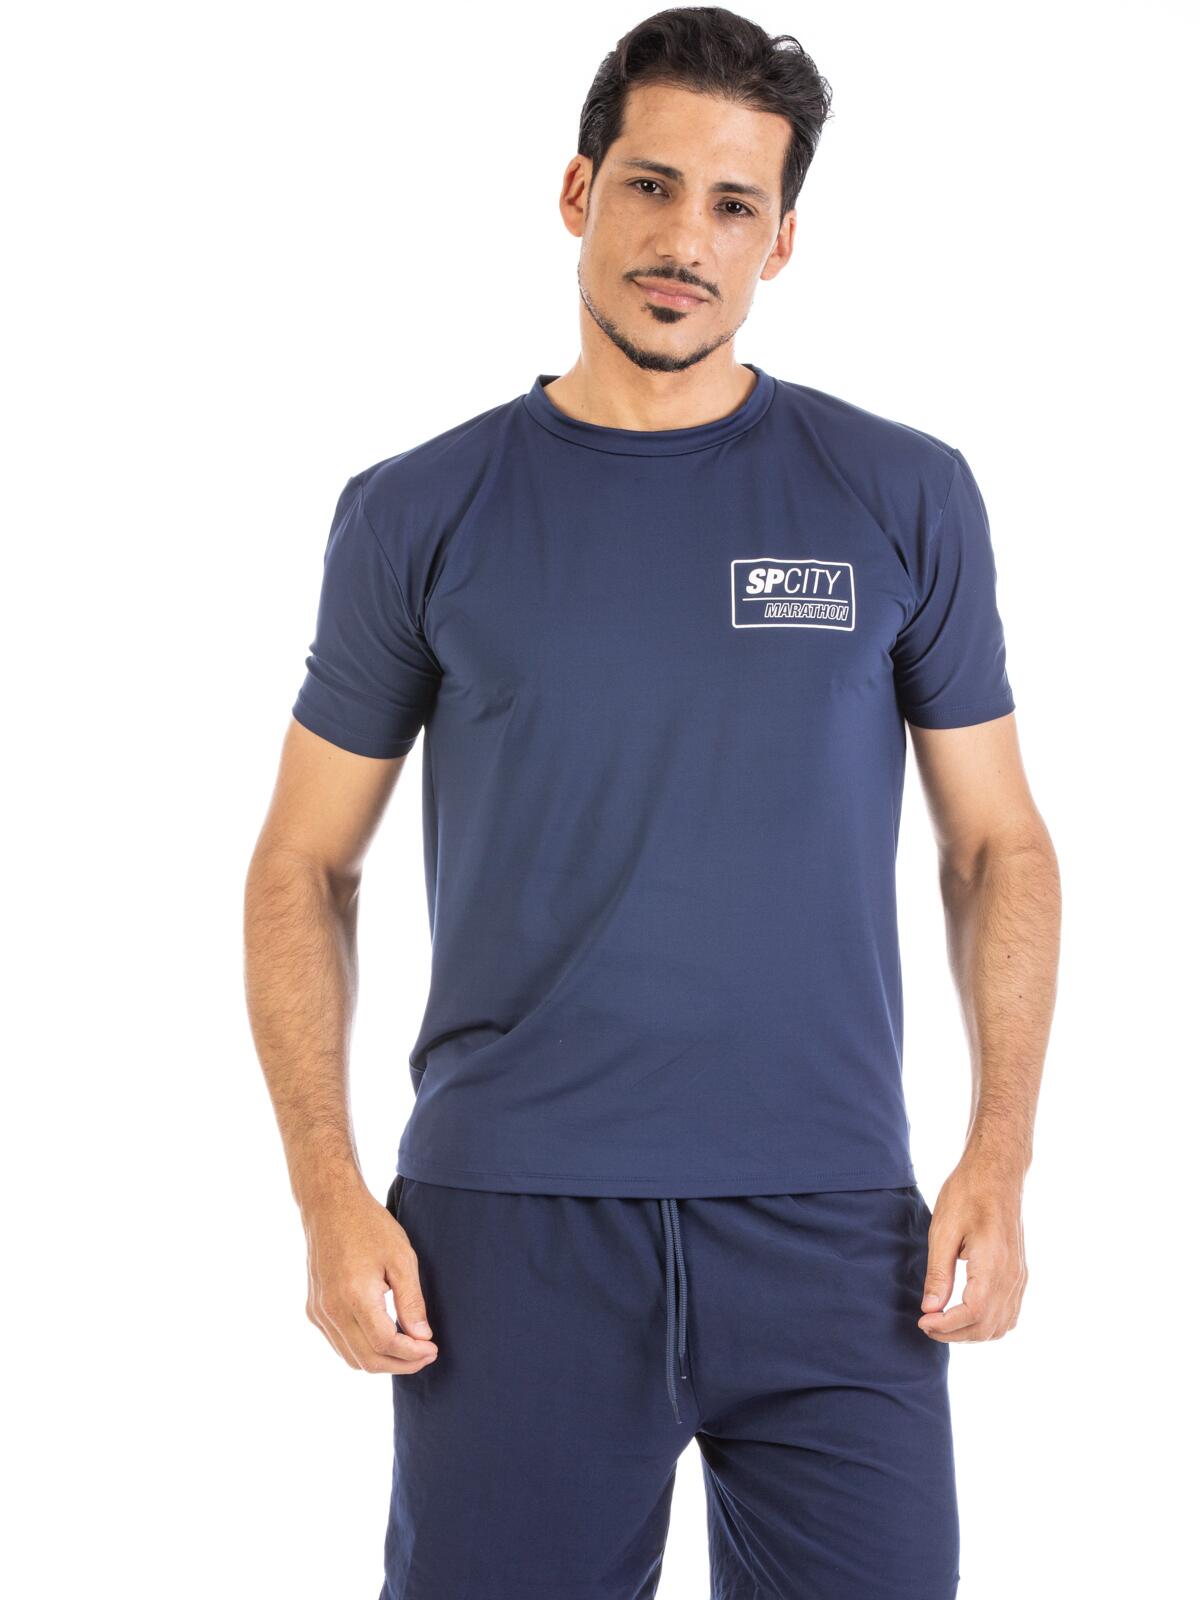 Camiseta Coleção SP City Azul Marinho